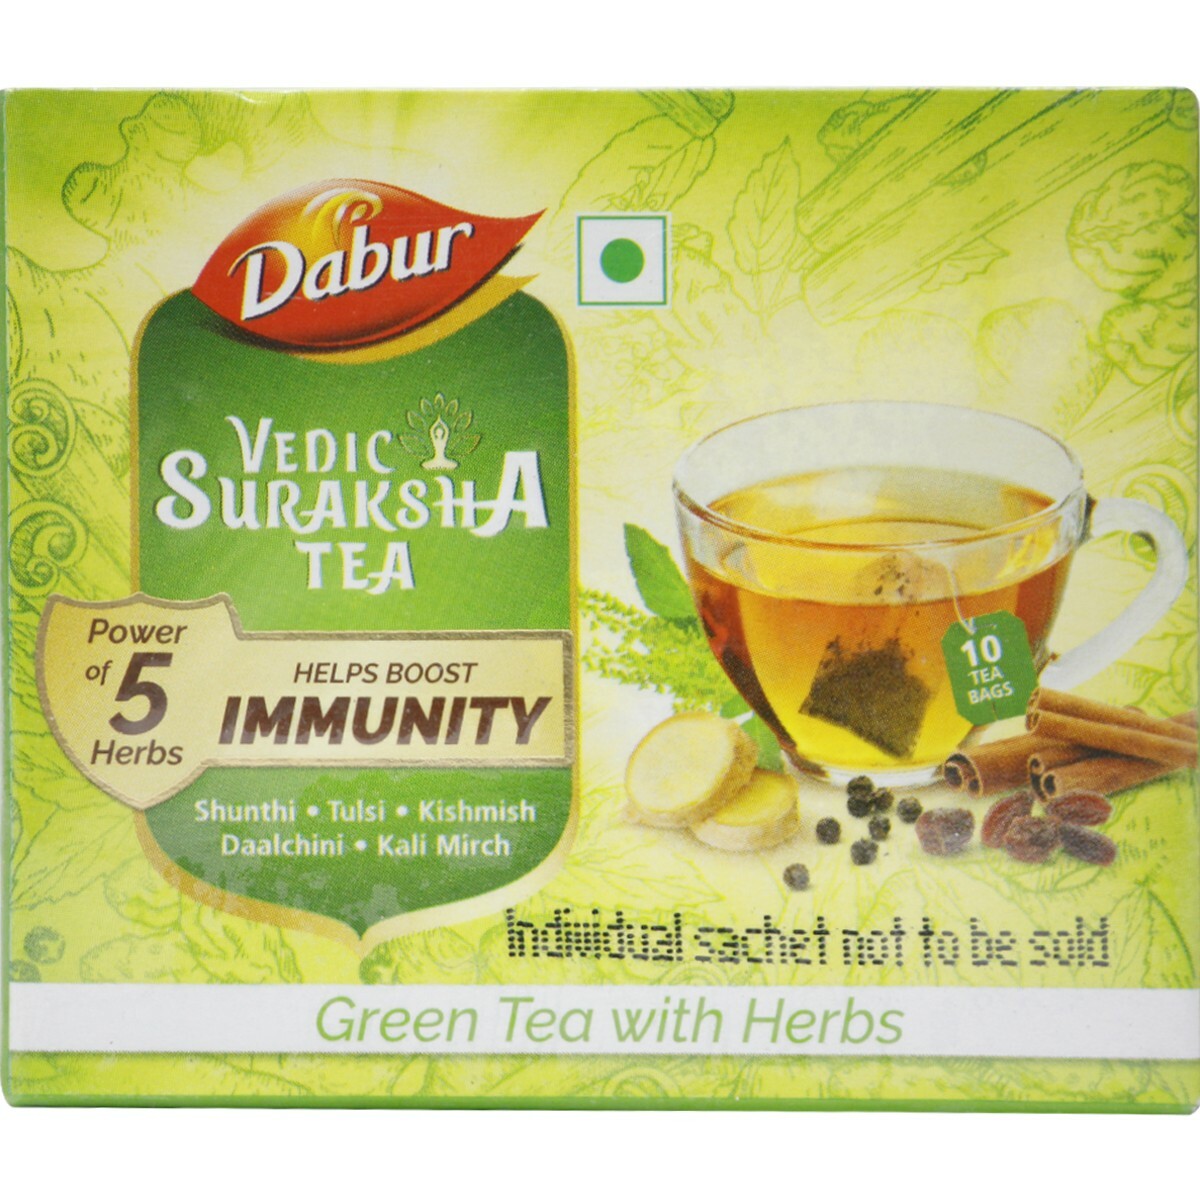 Dabur Vedic Suraksha Grn Tea 10's